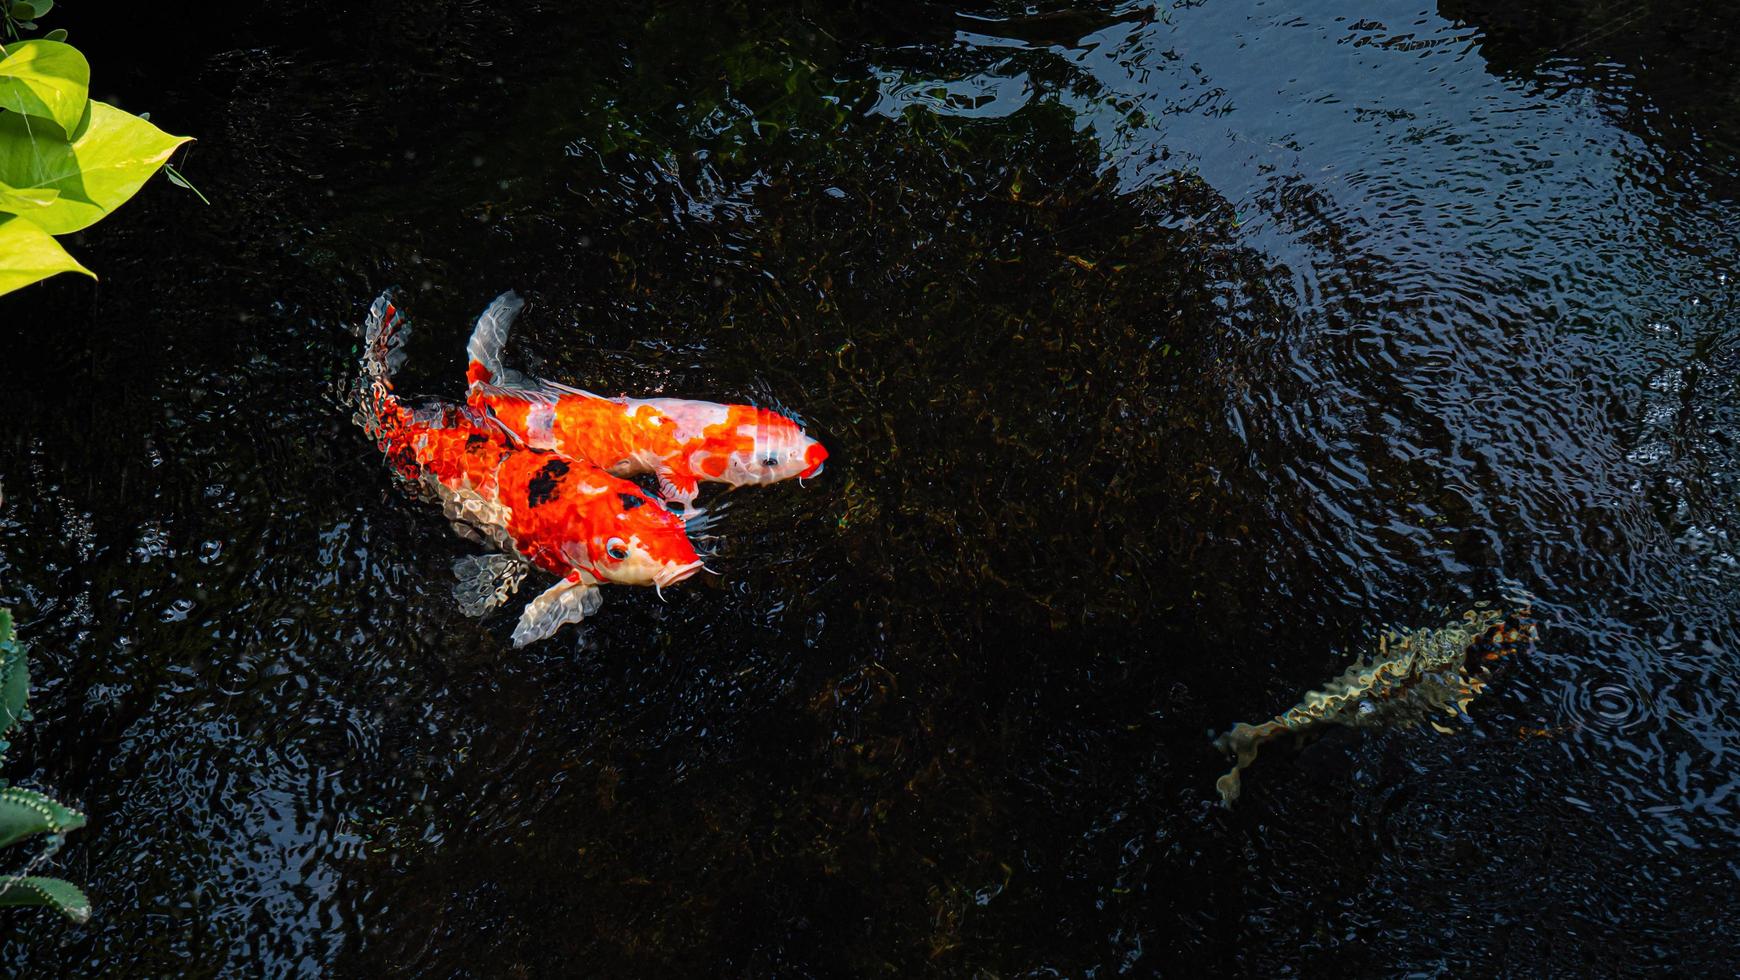 peces koi de japón o carpas elegantes nadando en un estanque de peces de estanque negro. mascotas populares para la relajación y el significado del feng shui. mascotas populares entre las personas. a los asiáticos les encanta criarlo para la buena fortuna. foto